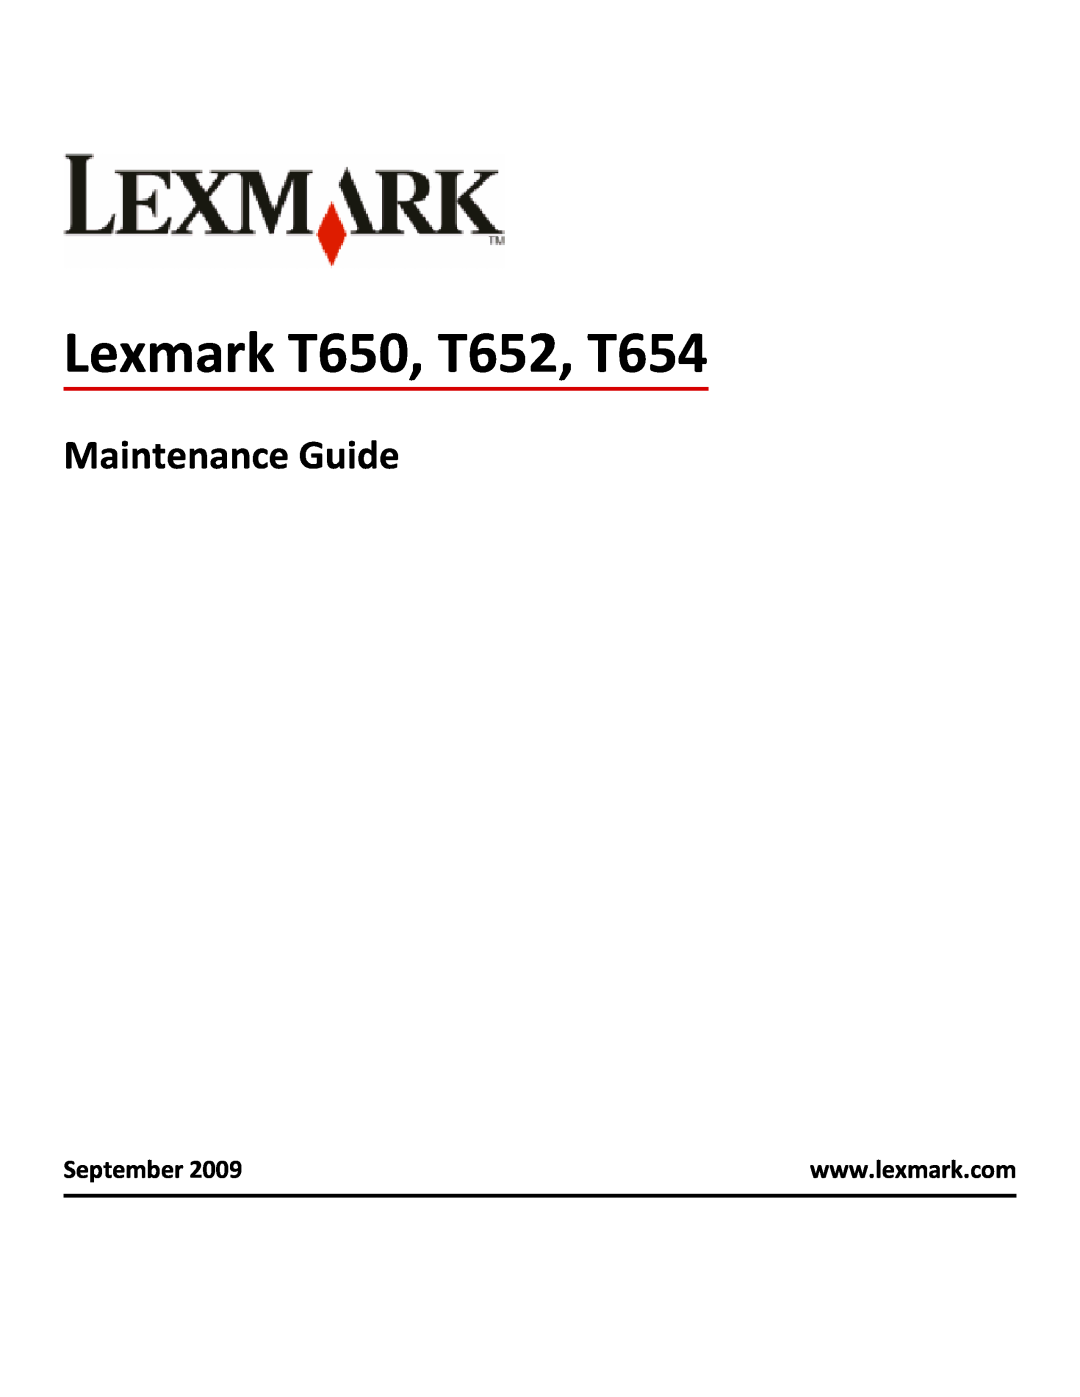 Lexmark T654DTN manual Maintenance Guide, September, Lexmark T650, T652, T654 